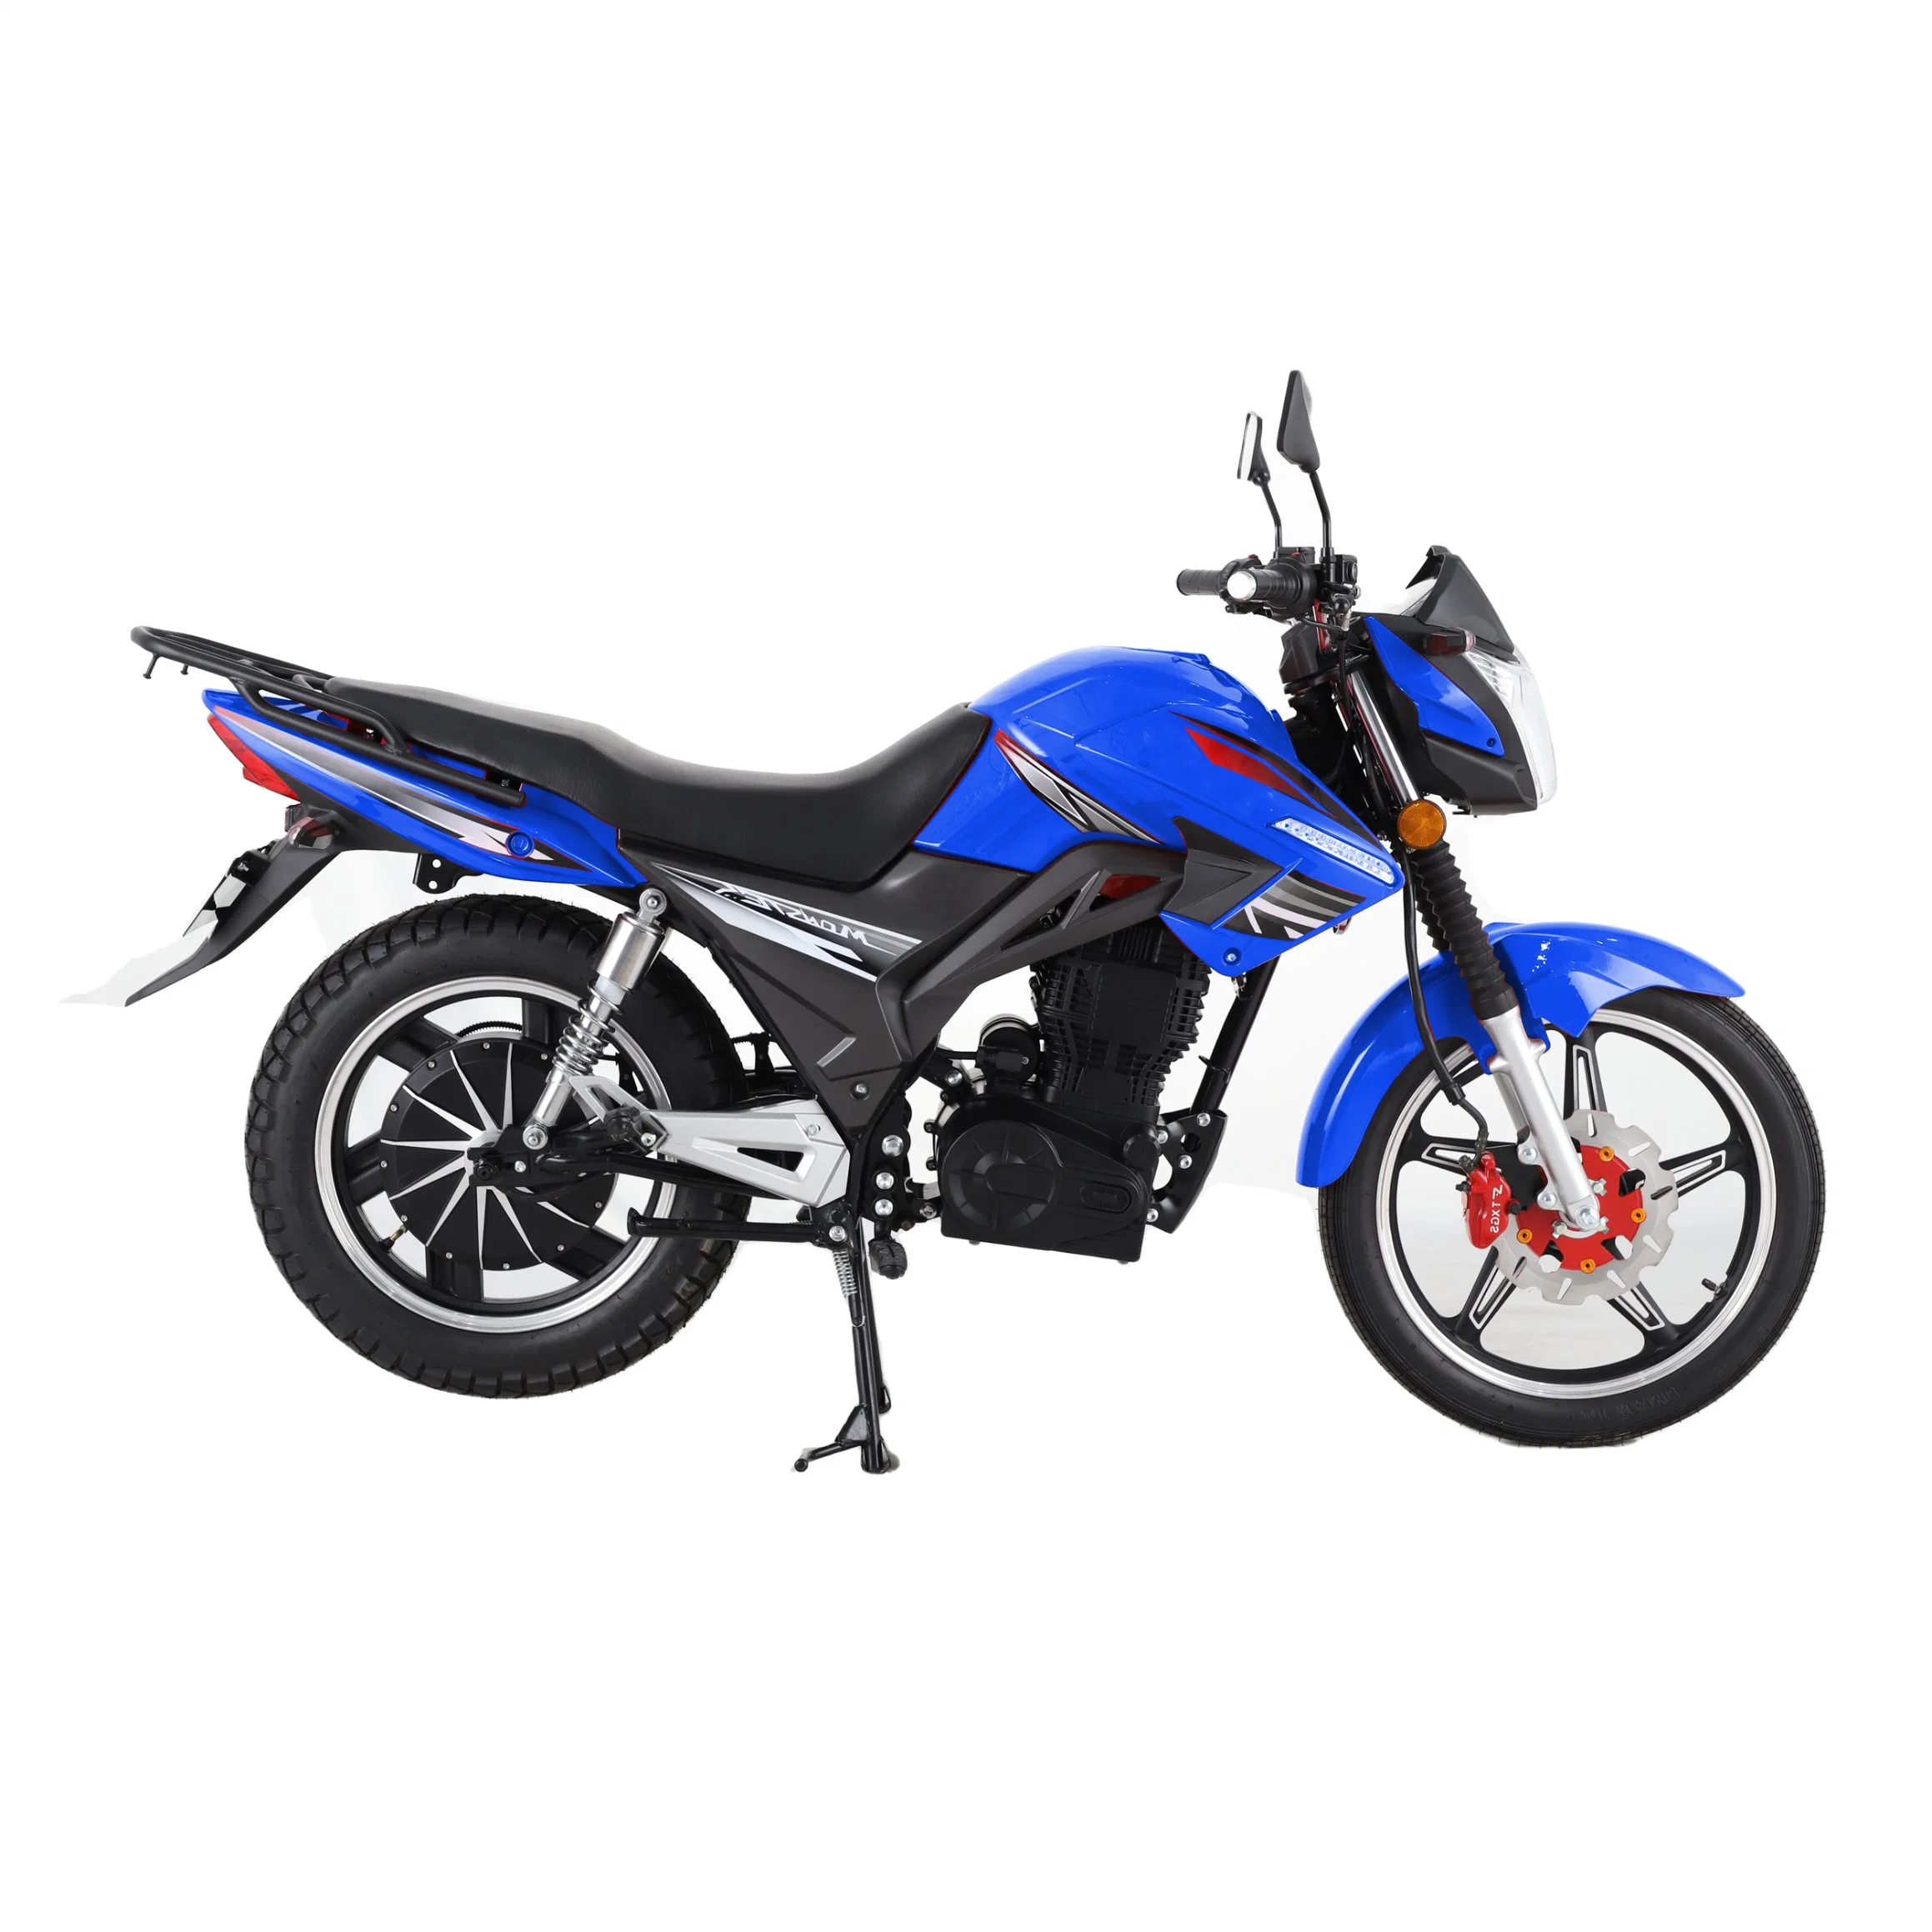 Motocicleta esportiva de corrida Efficient Power E com bateria de lítio de 72V50Ah e 4000W. Alta velocidade de 90km/h. Motocicleta elétrica.